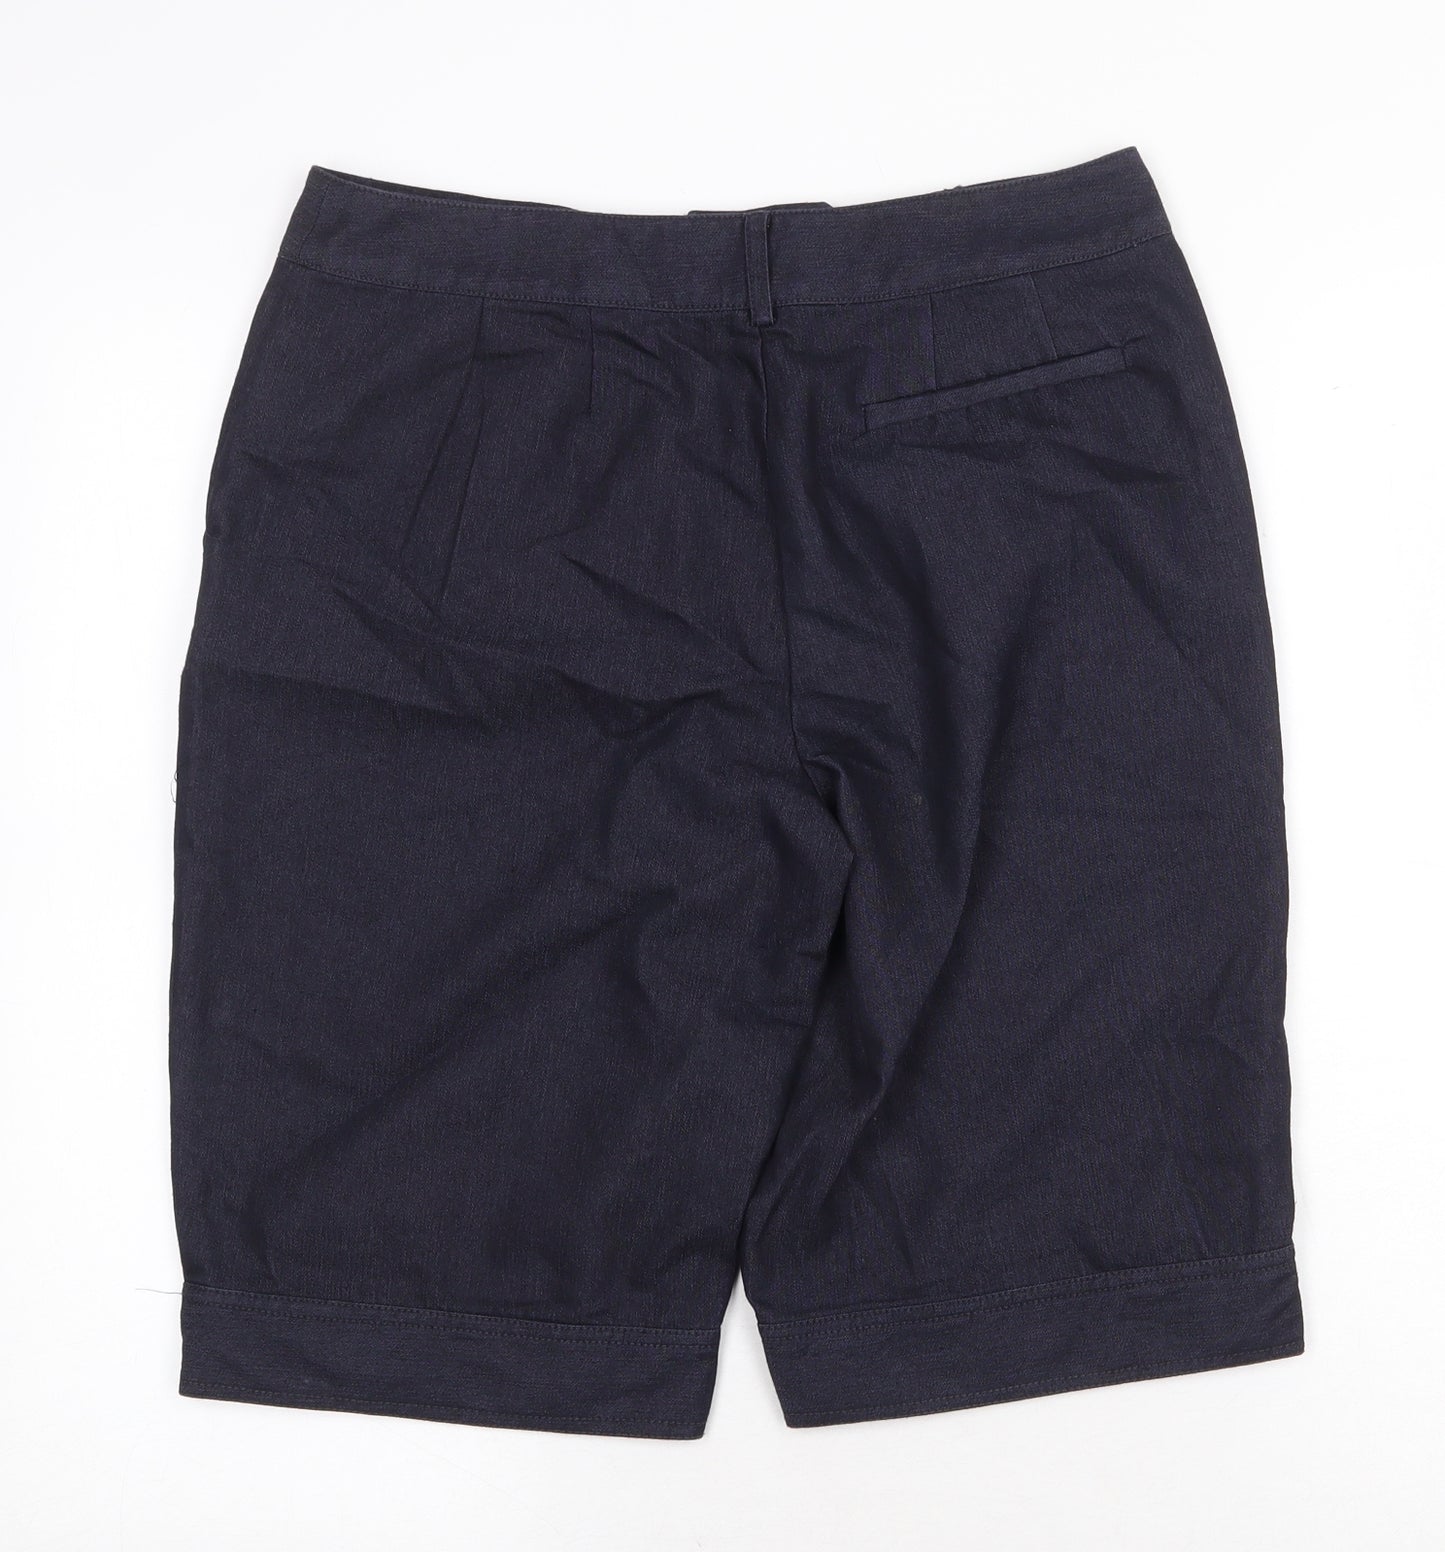 August Silk Womens Blue Cotton Sailor Shorts Size 8 Regular Zip